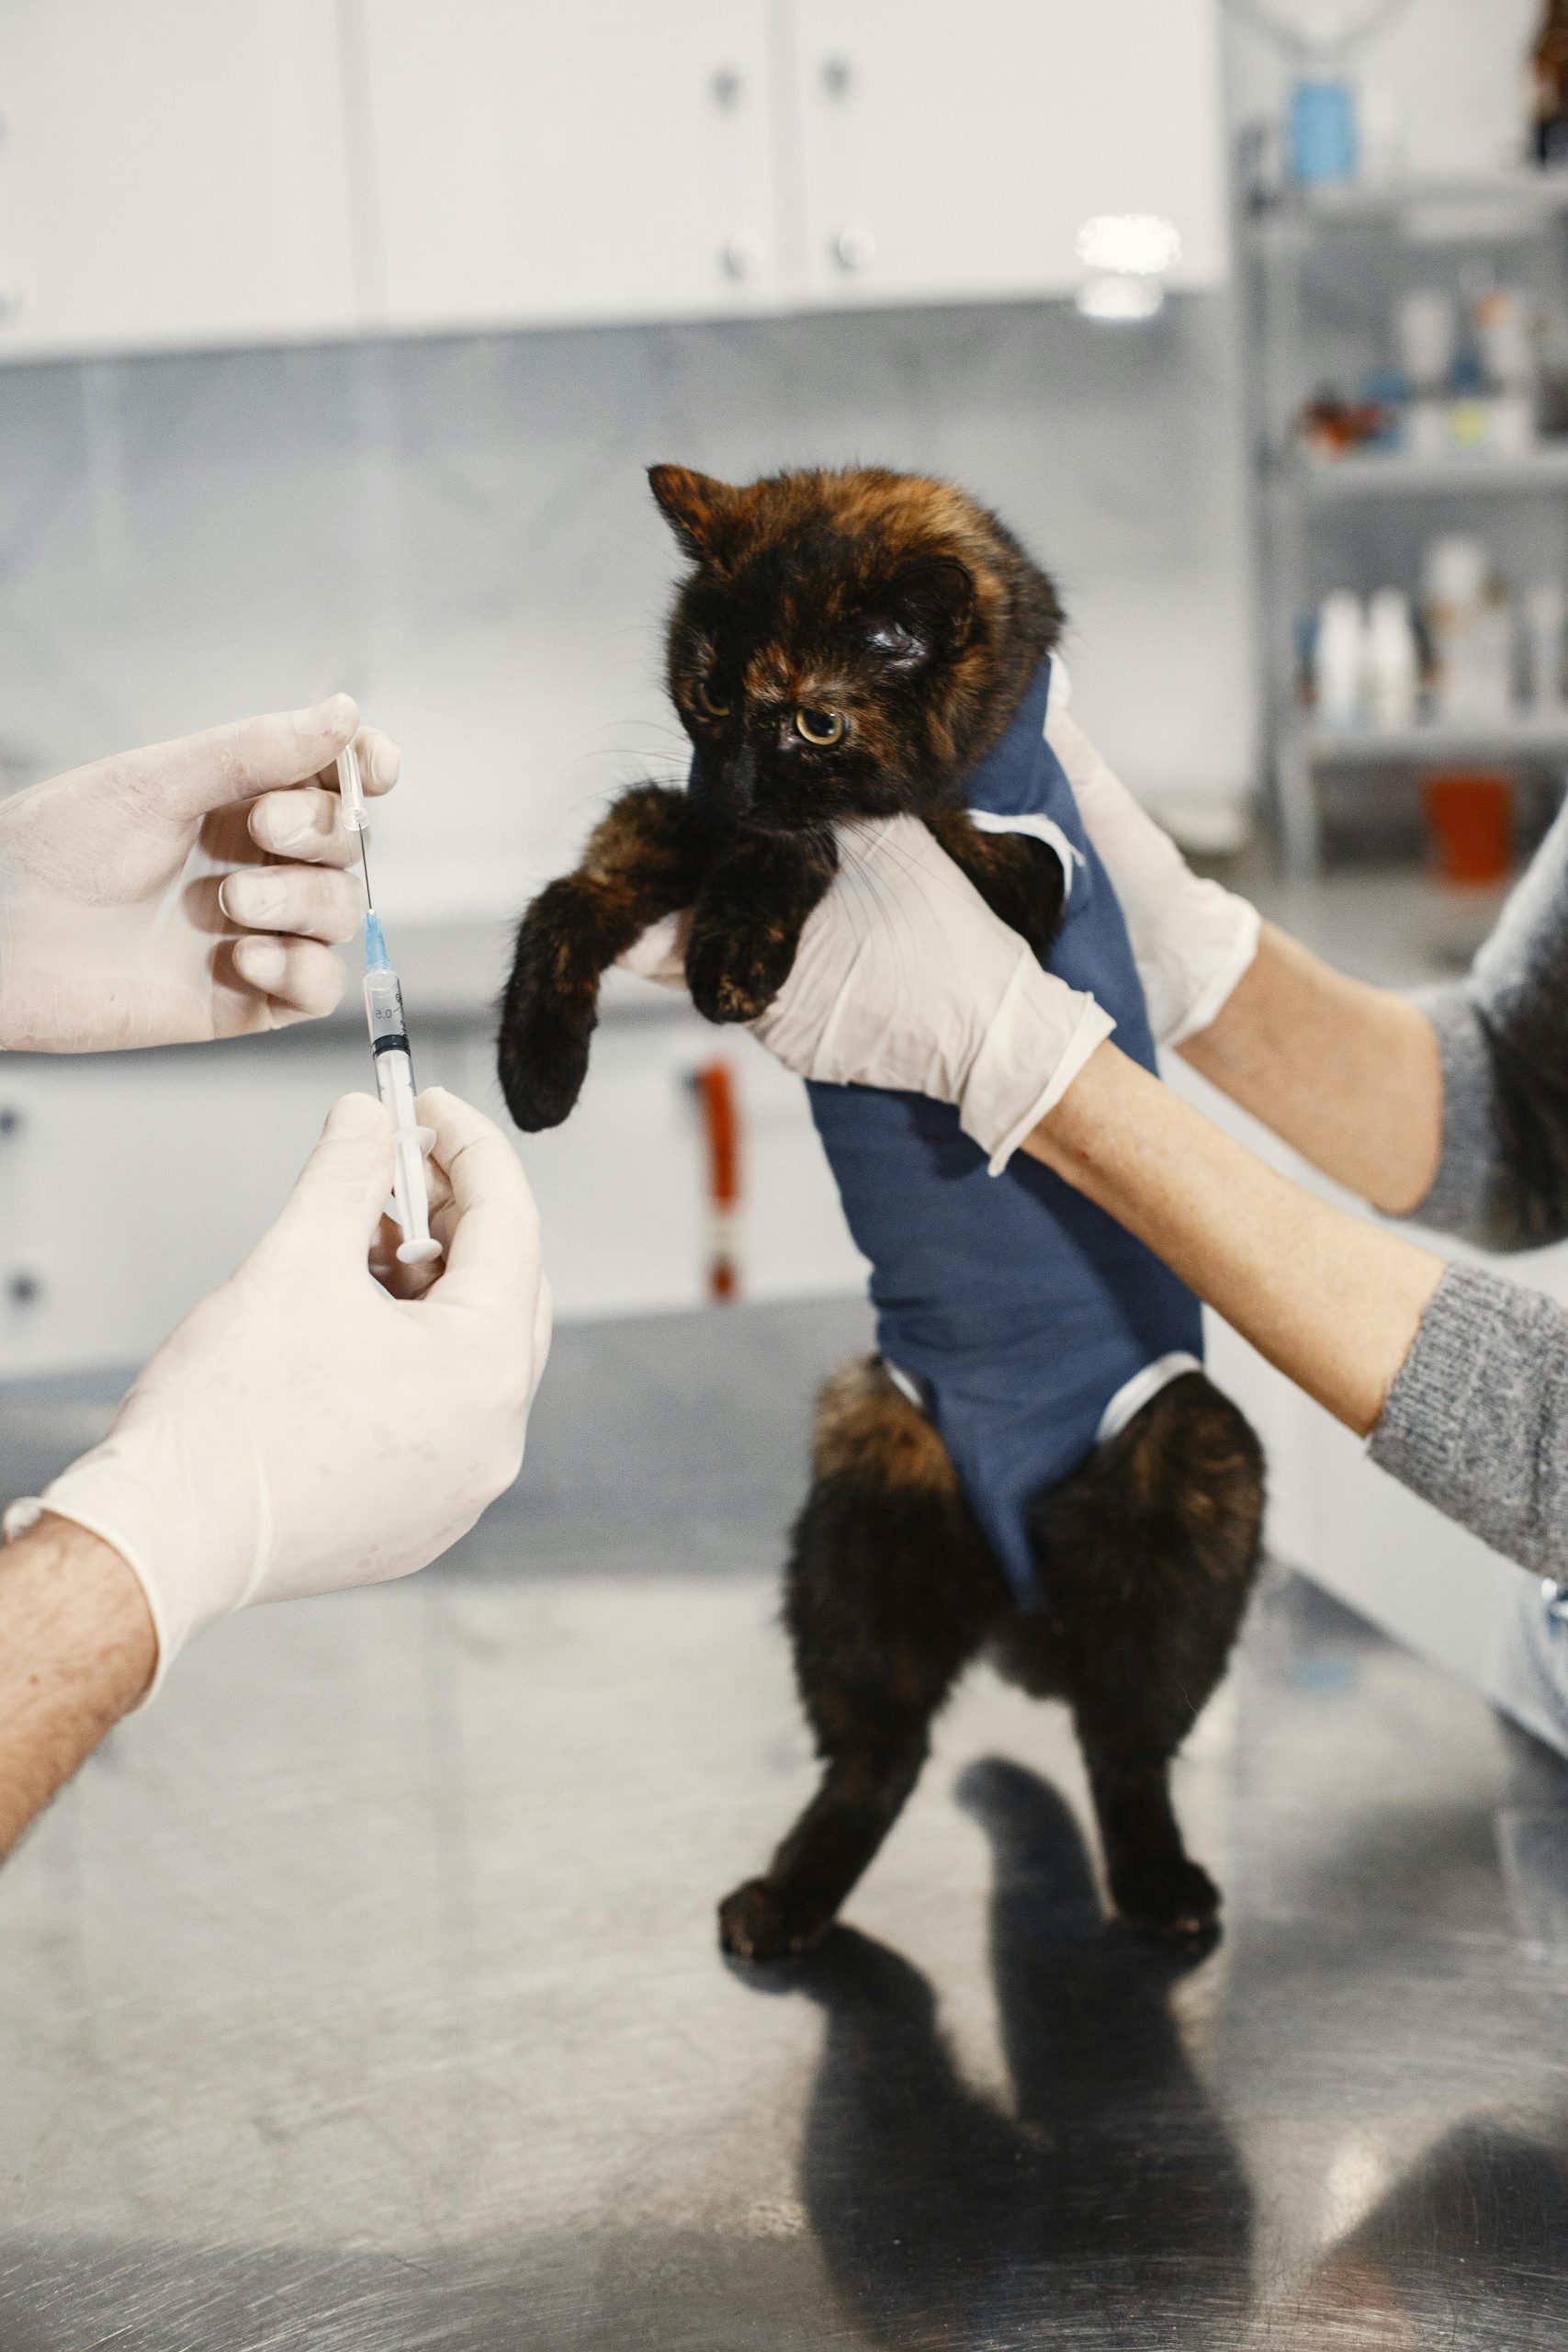 Vaksin untuk Kucing: Jenis, Jadwal, dan Harga